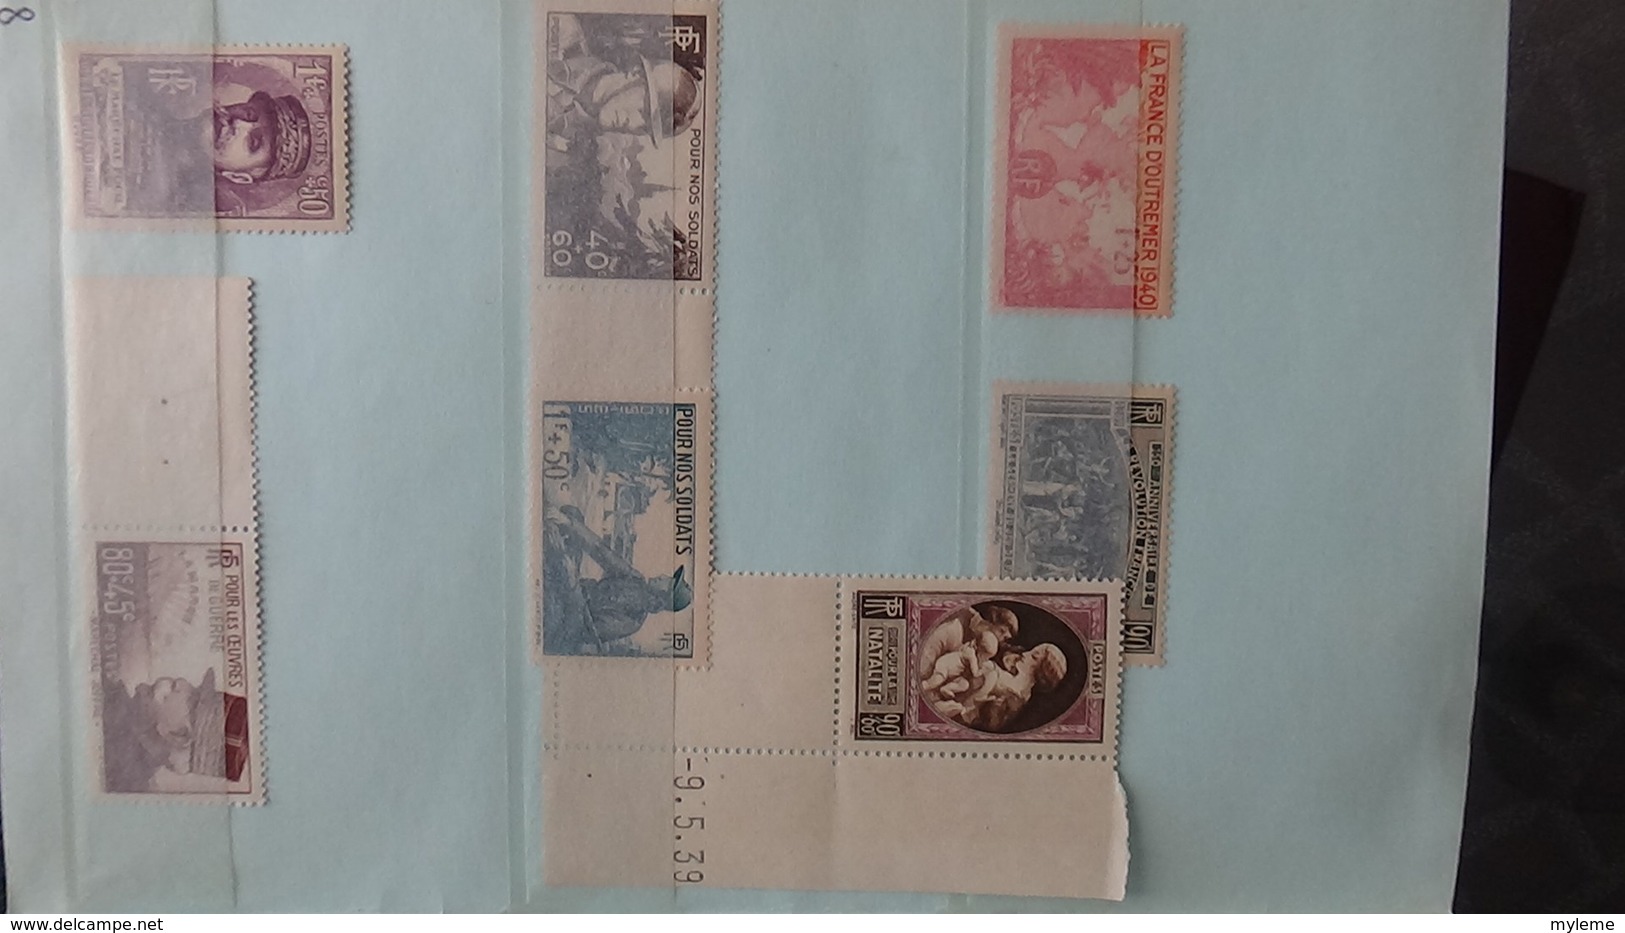 Carnet à choix avec timbres années 30 à 60 tous ** dont séries GH, croix rouges ... A saisir !!!